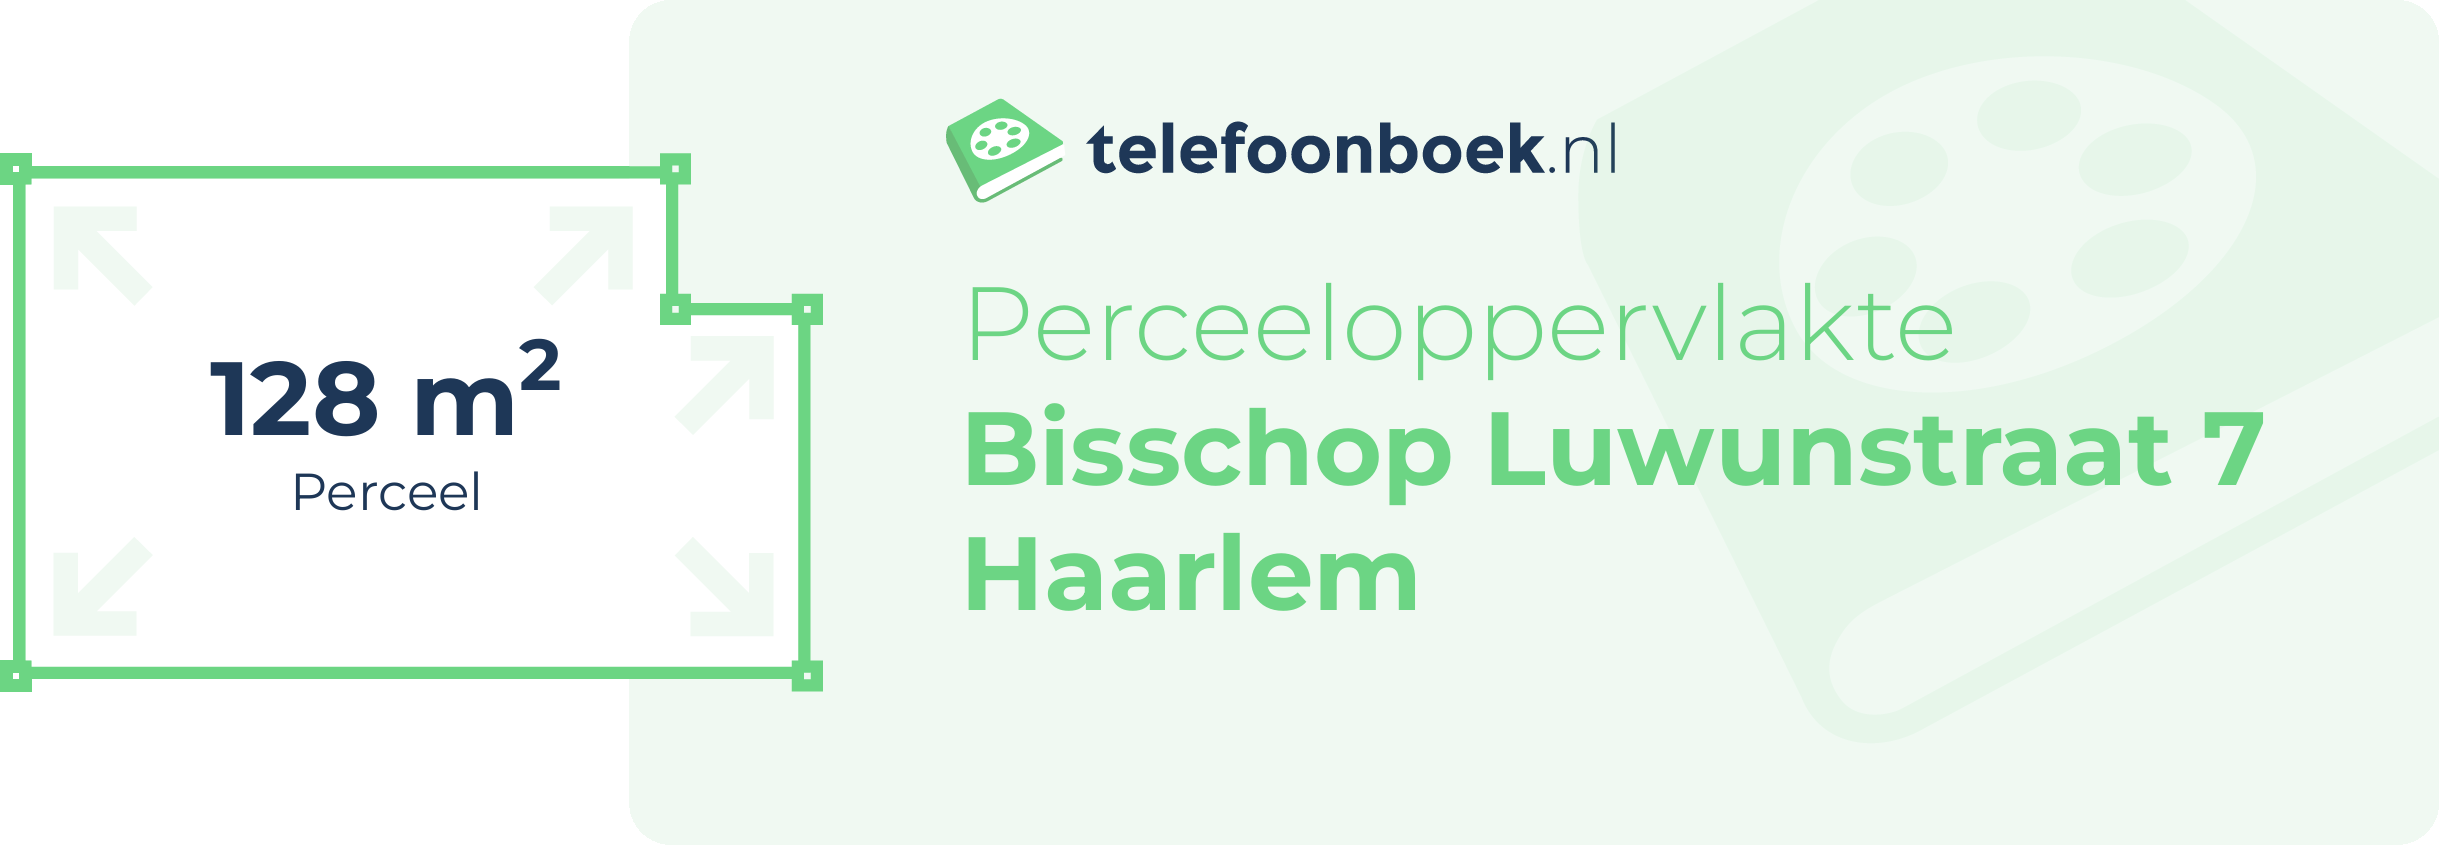 Perceeloppervlakte Bisschop Luwunstraat 7 Haarlem